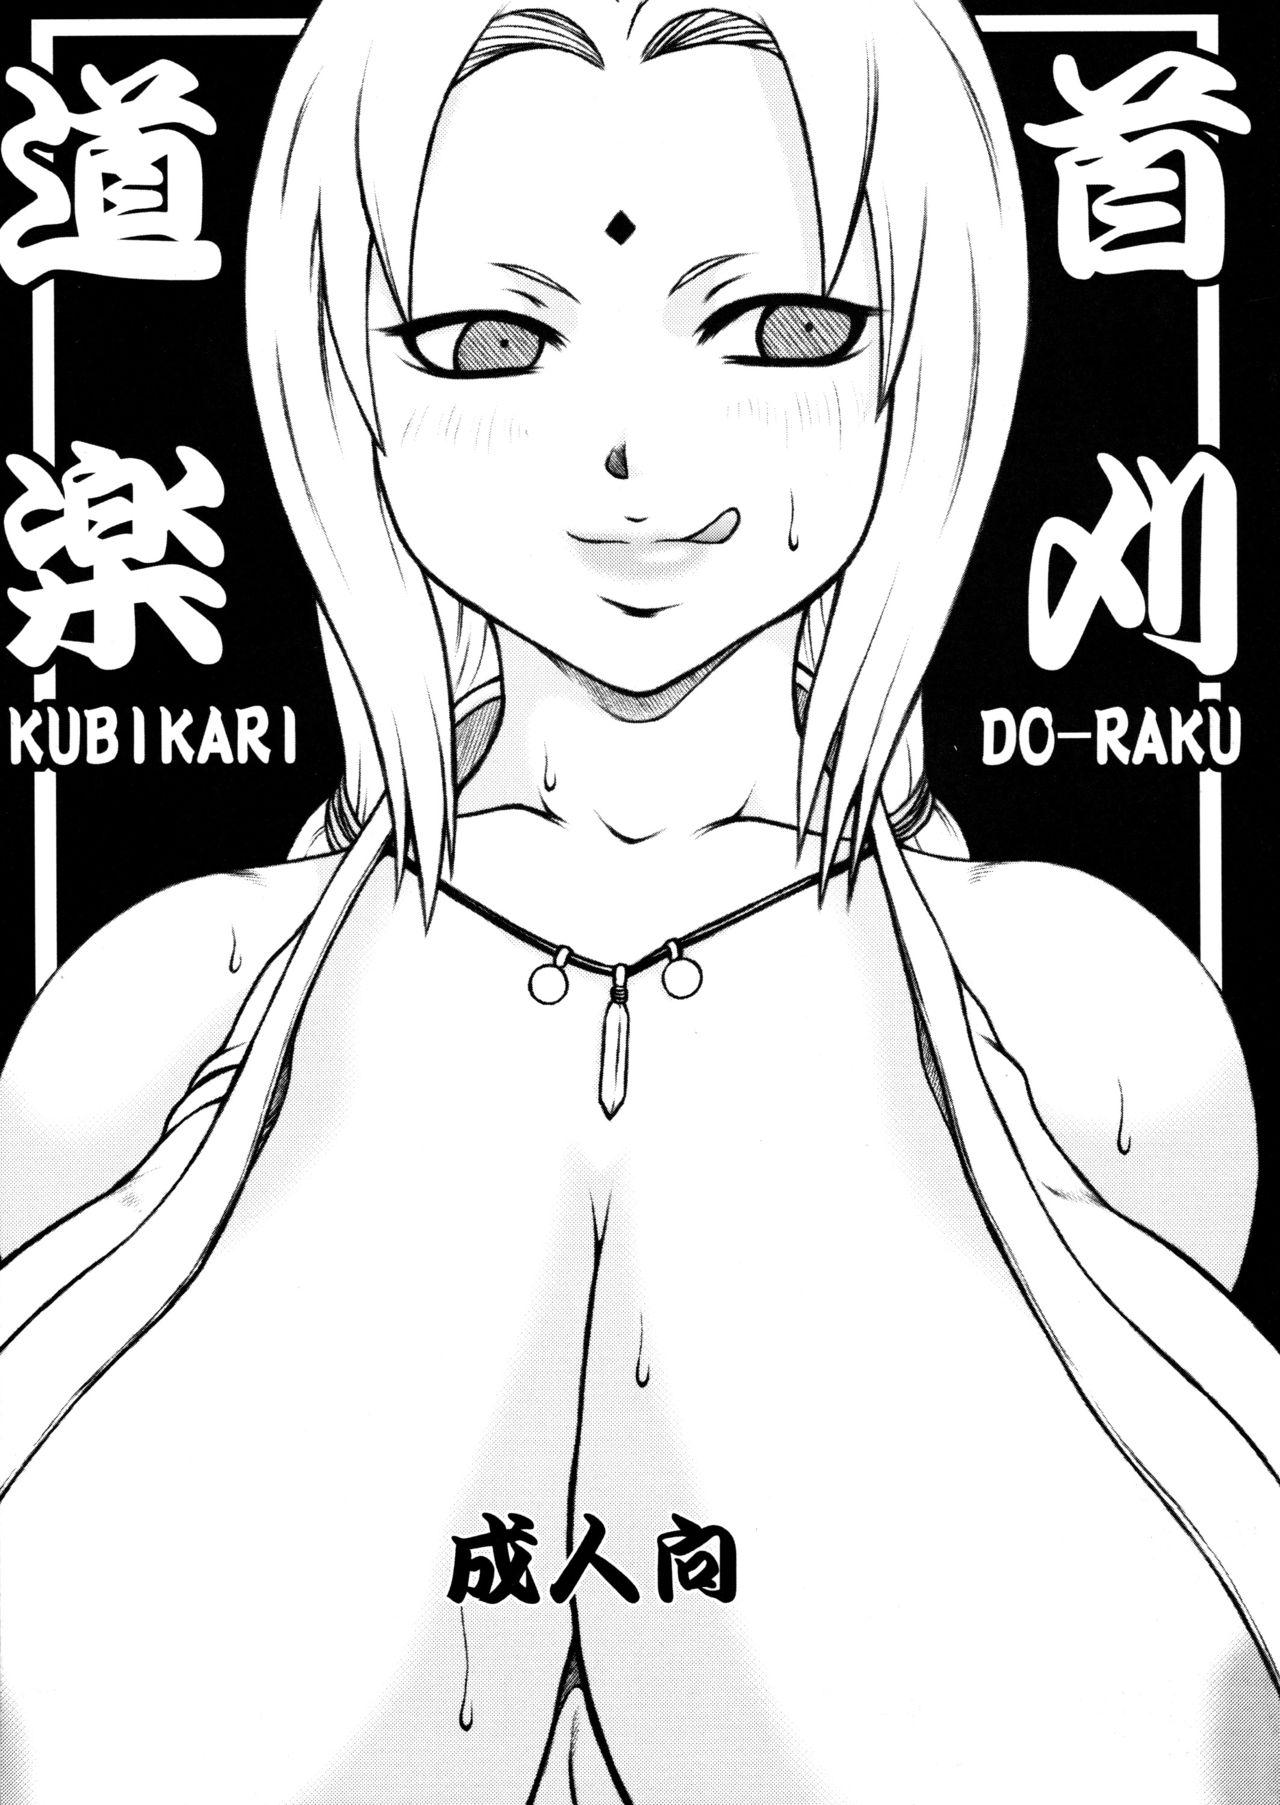 Girls Kubigari Doraku - Naruto Handjob - Picture 1